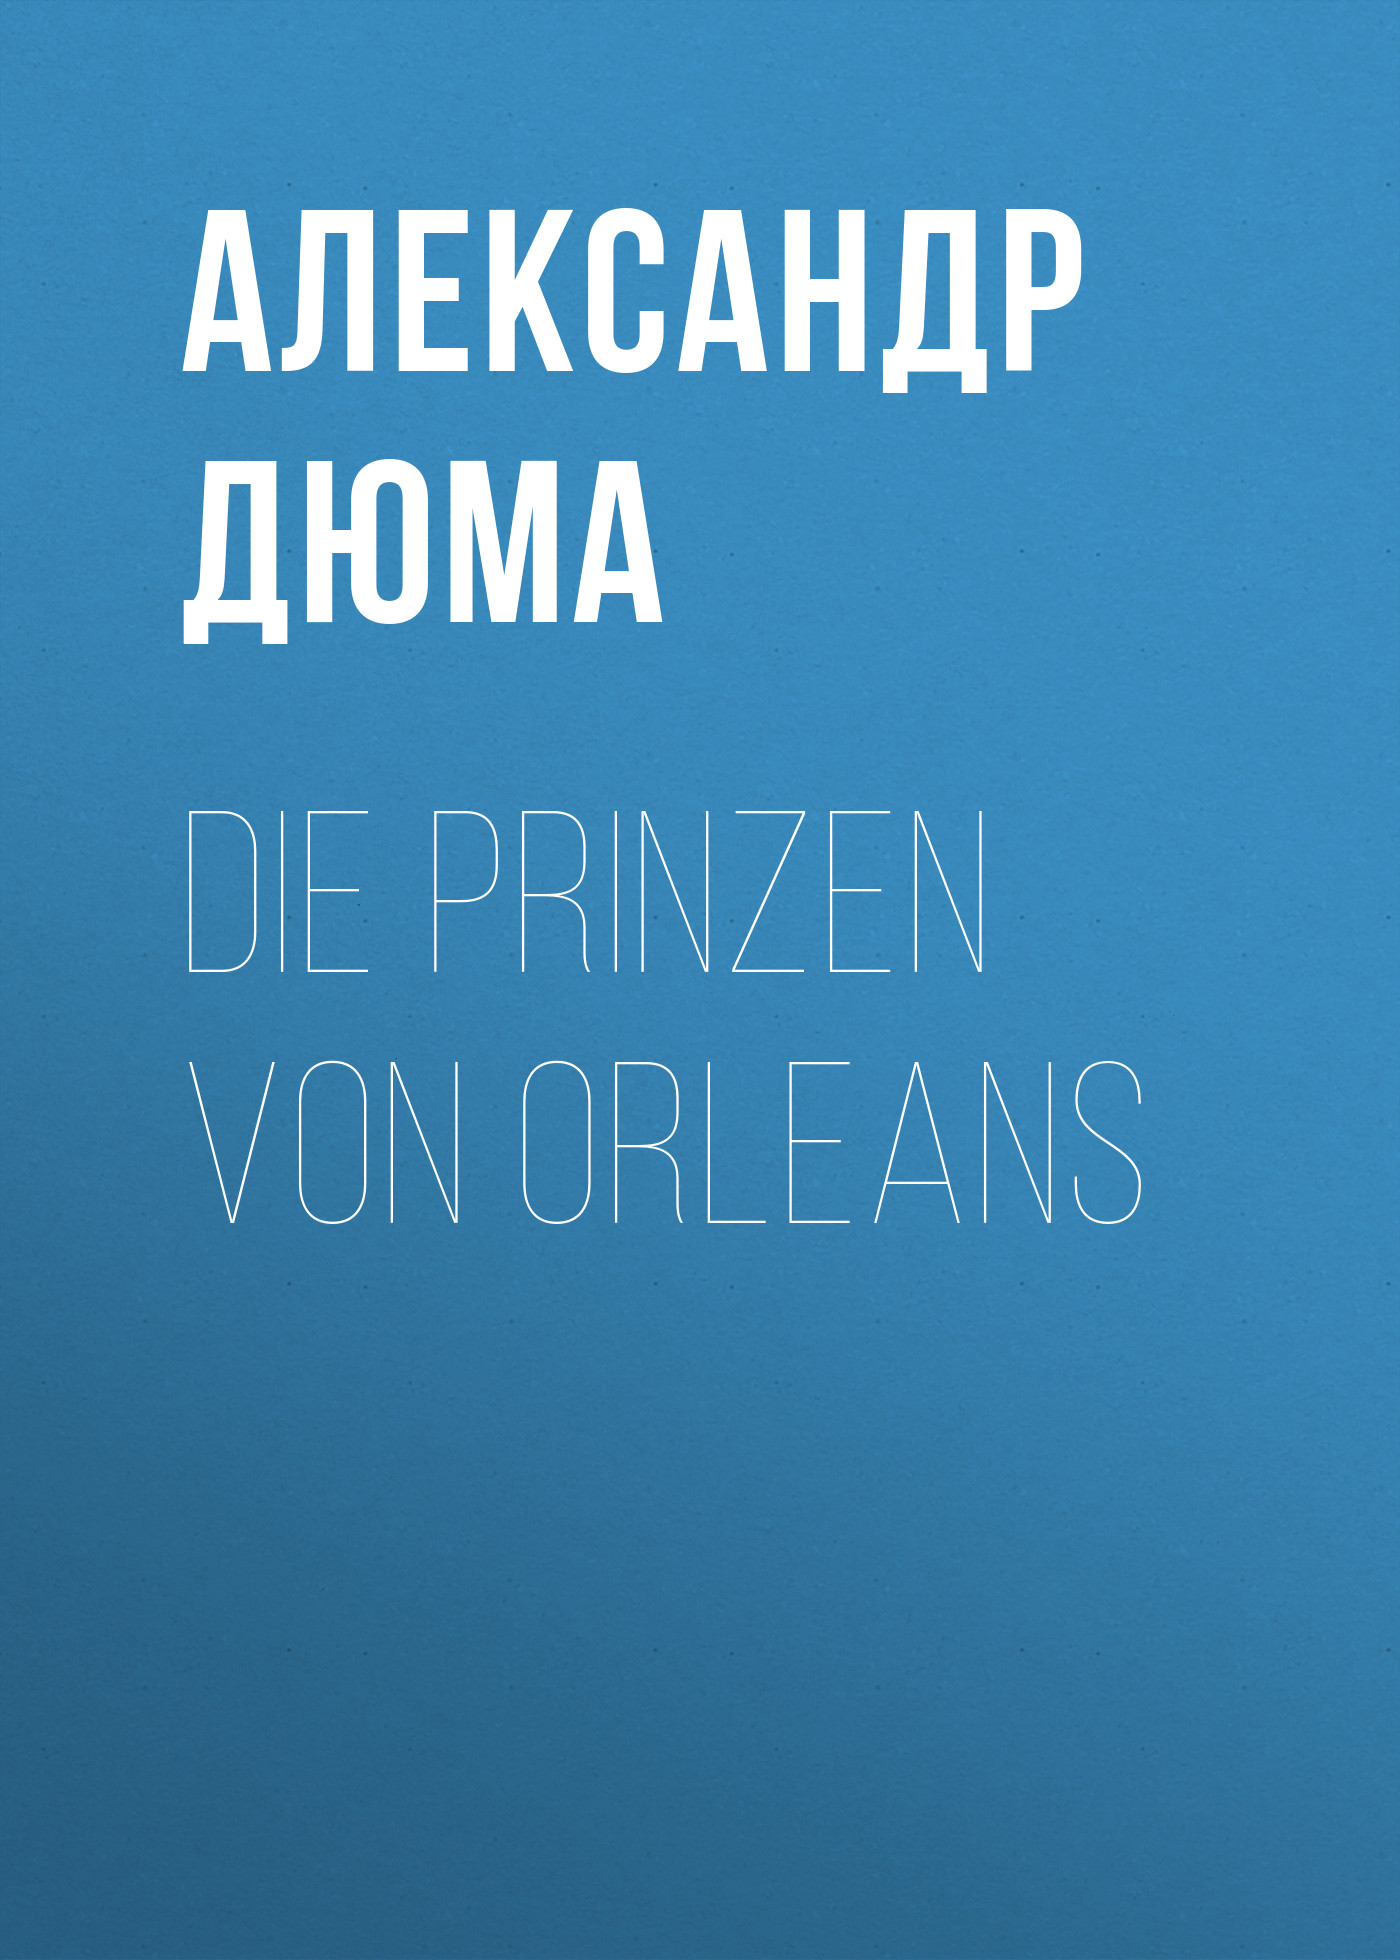 Книга Die Prinzen von Orleans из серии , созданная Alexandre Dumas der Ältere, может относится к жанру Зарубежная классика. Стоимость электронной книги Die Prinzen von Orleans с идентификатором 48632588 составляет 0 руб.